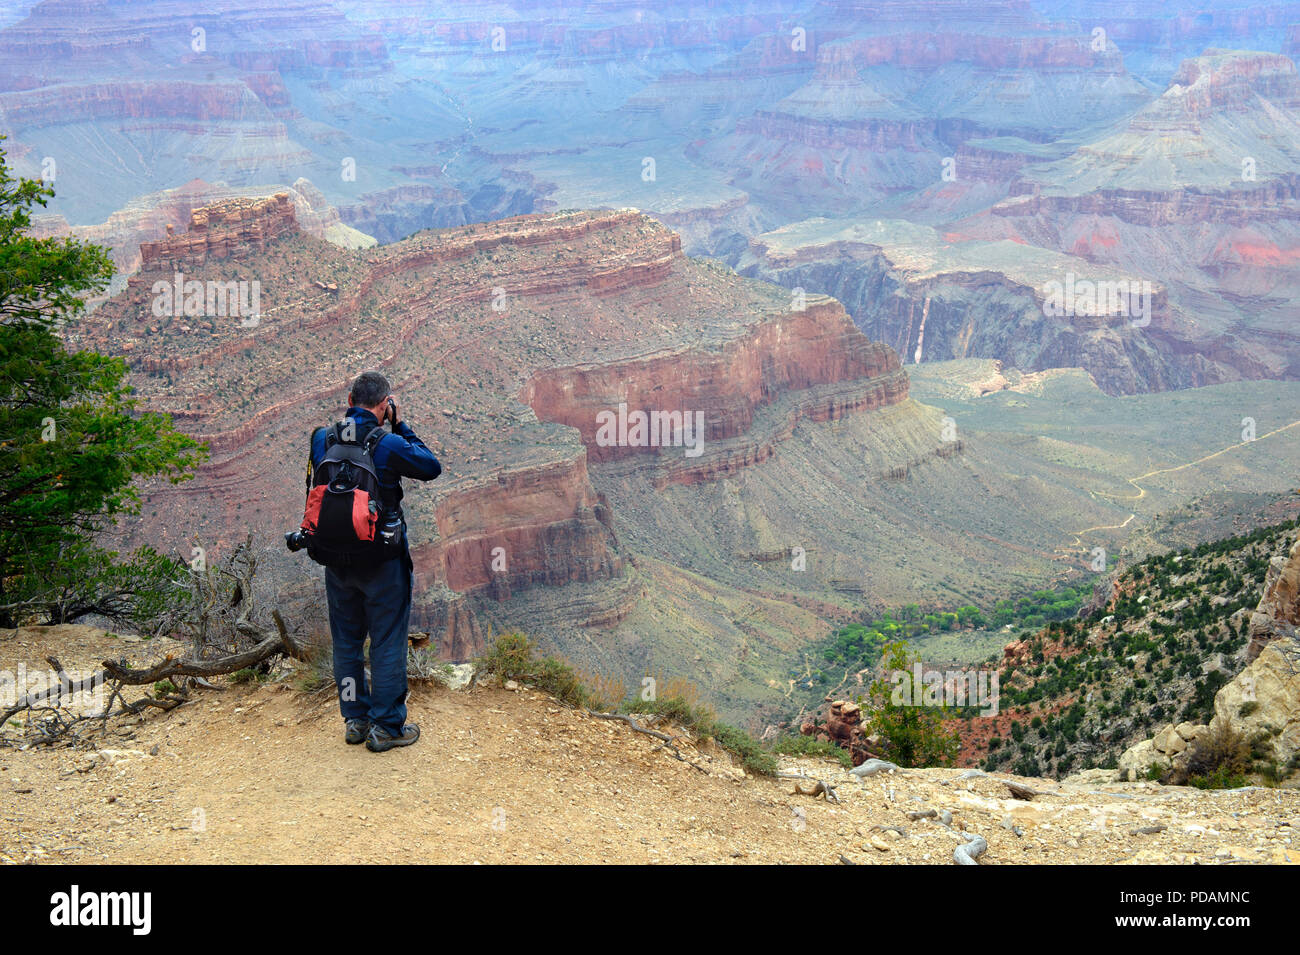 Der Mensch ein Bild von der Grand Canyon vom South Rim. Stockfoto